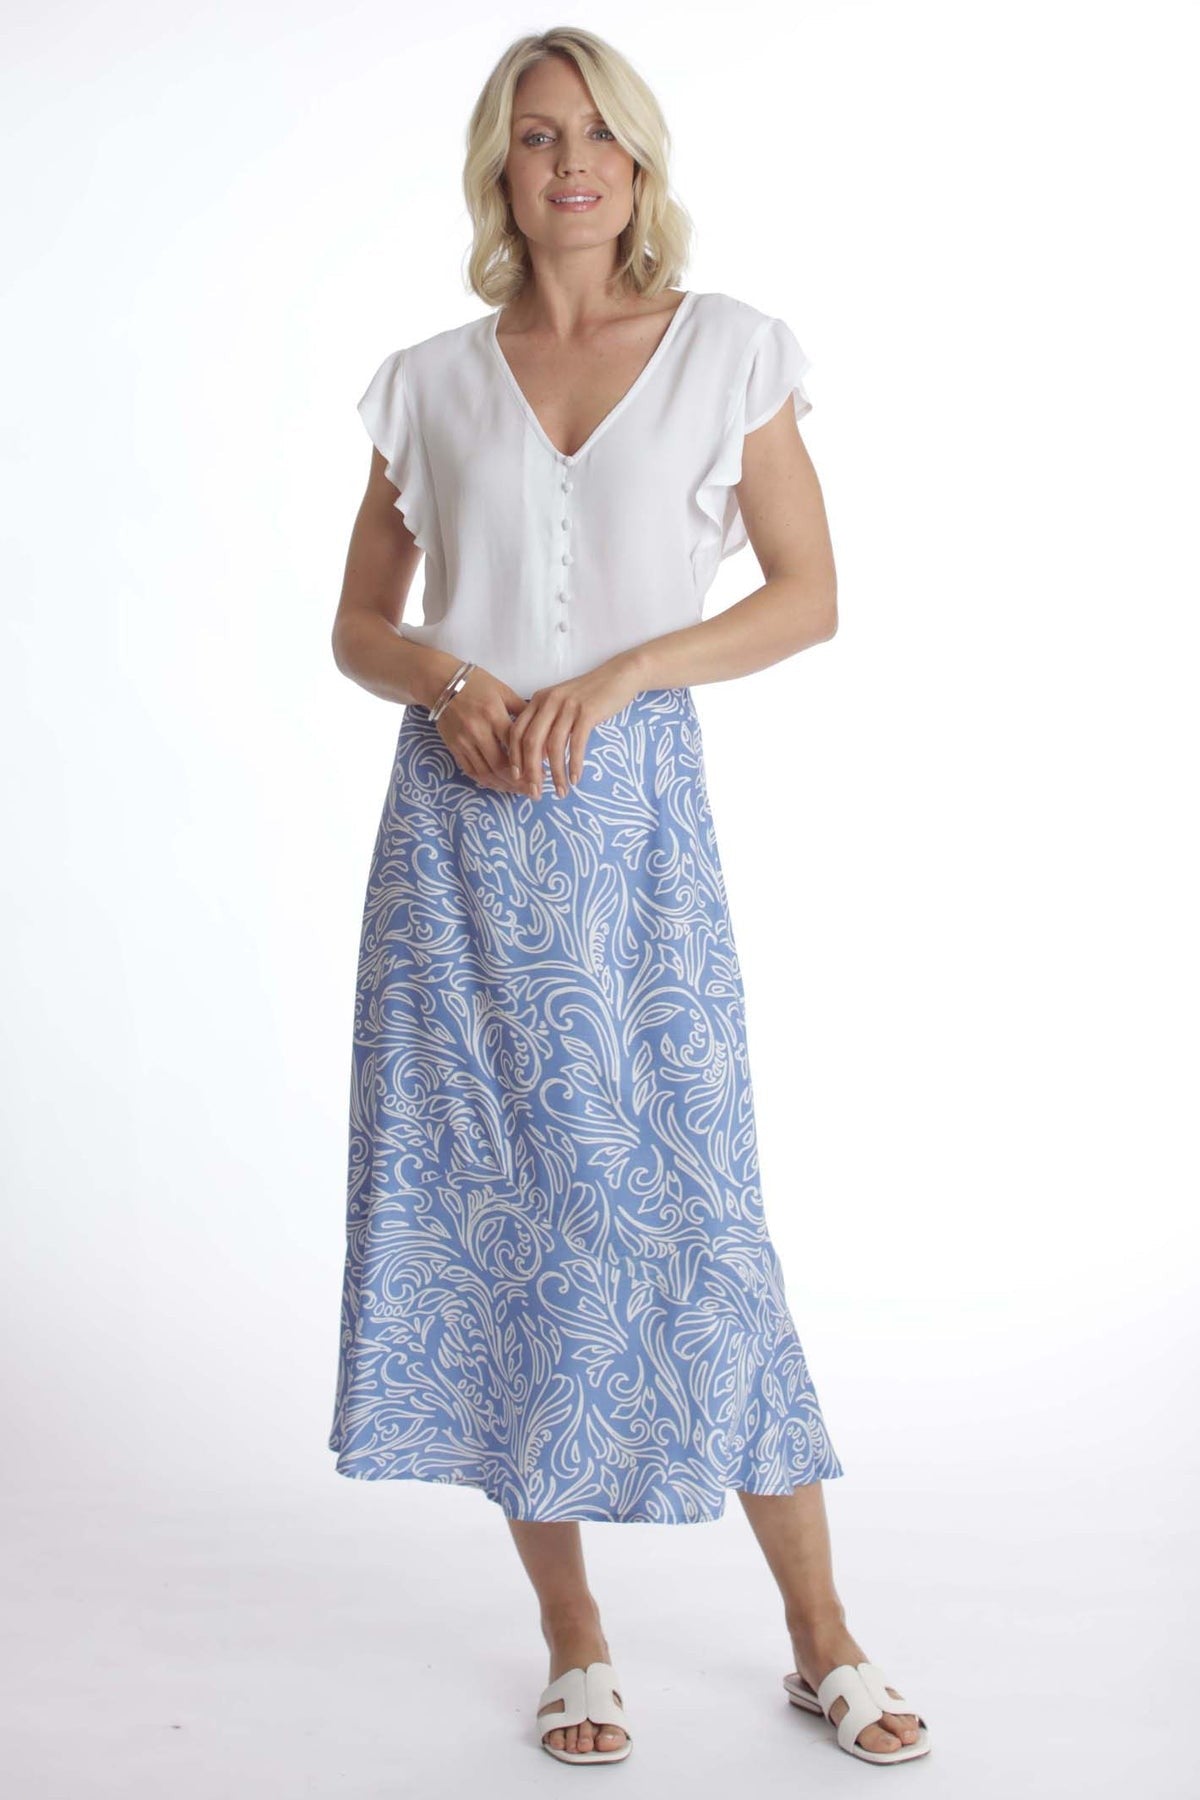 Pomodoro Blue Patterned Skirt